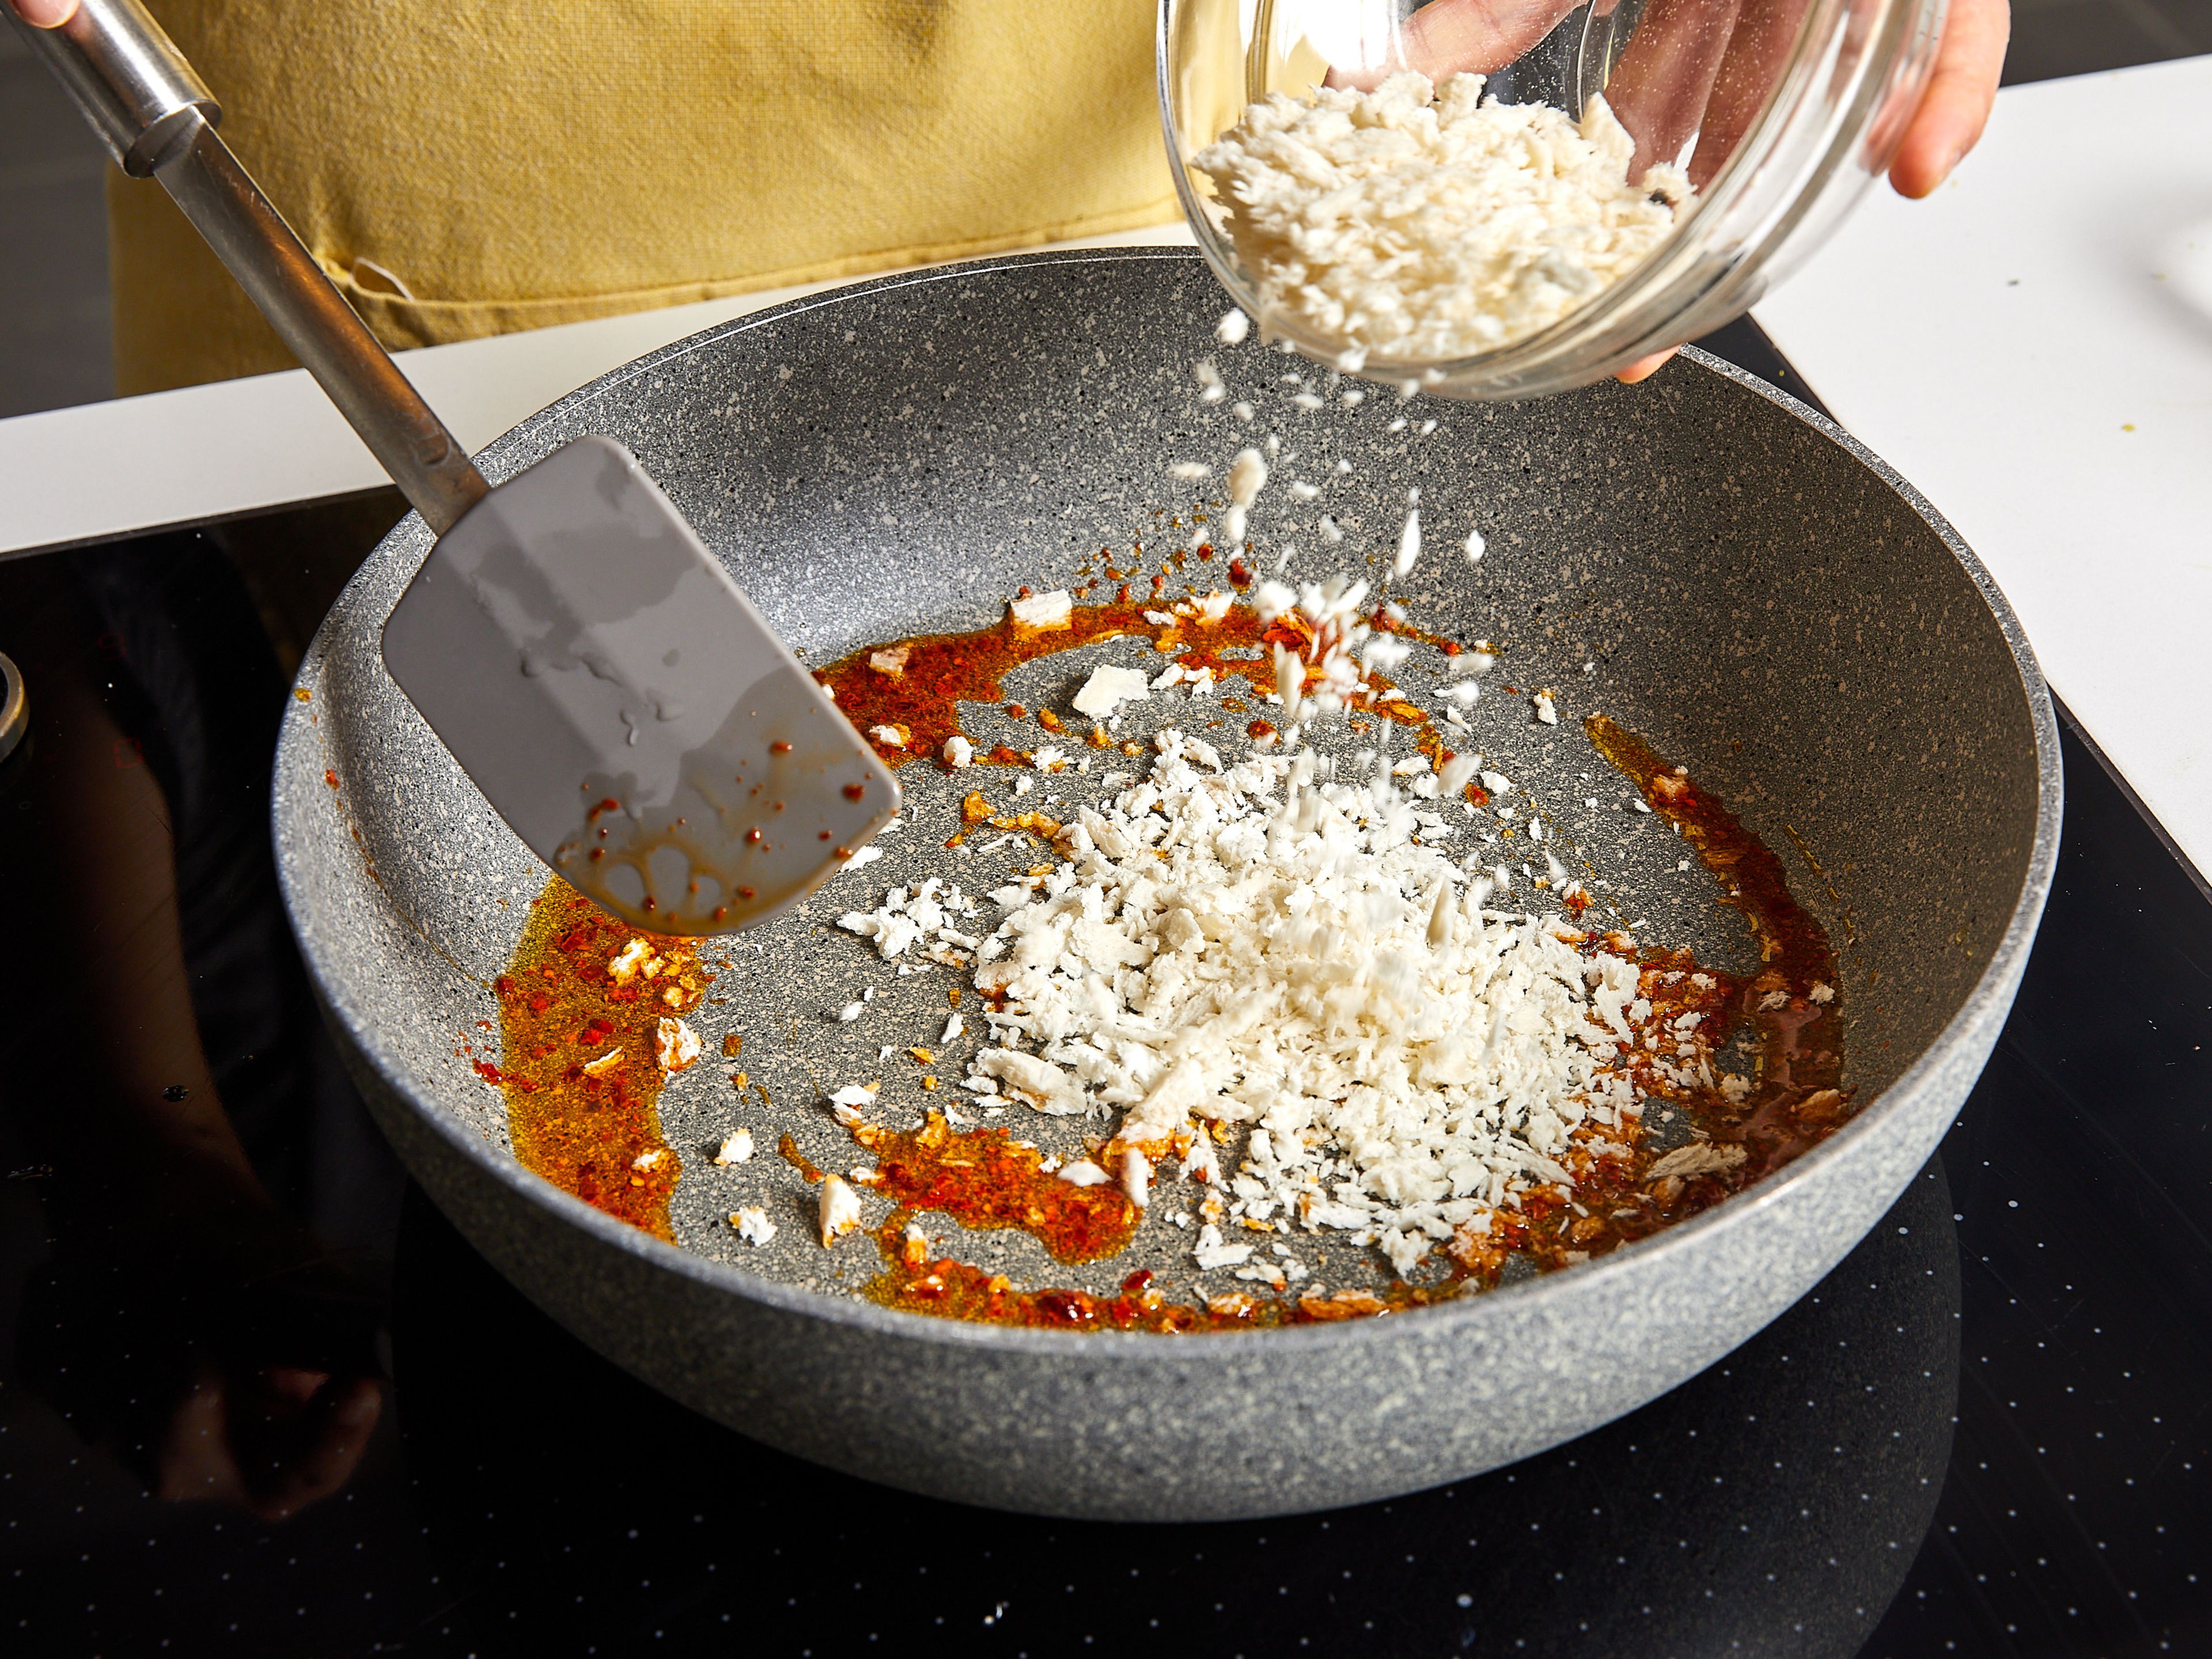 Einen großen Topf mit Wasser zum Kochen bringen und großzügig salzen. Nudeln hinzugeben und ca. 2 Min. kürzer als in der Packungsbeilage angegeben kochen. Nach der Kochzeit etwa 250 ml Nudelwasser auffangen. In der Zwischenzeit in einer großen Pfanne einen Teil des Olivenöls bei mittlerer Hitze erhitzen und die Chiliflocken hinzufügen. Ca. 1 Min. braten, bis das Öl rot geworden ist. Panko-Paniermehl hinzufügen und ca. 3 Min. goldbraun anbraten. Anschließend Panko herausnehmen und beiseitestellen.